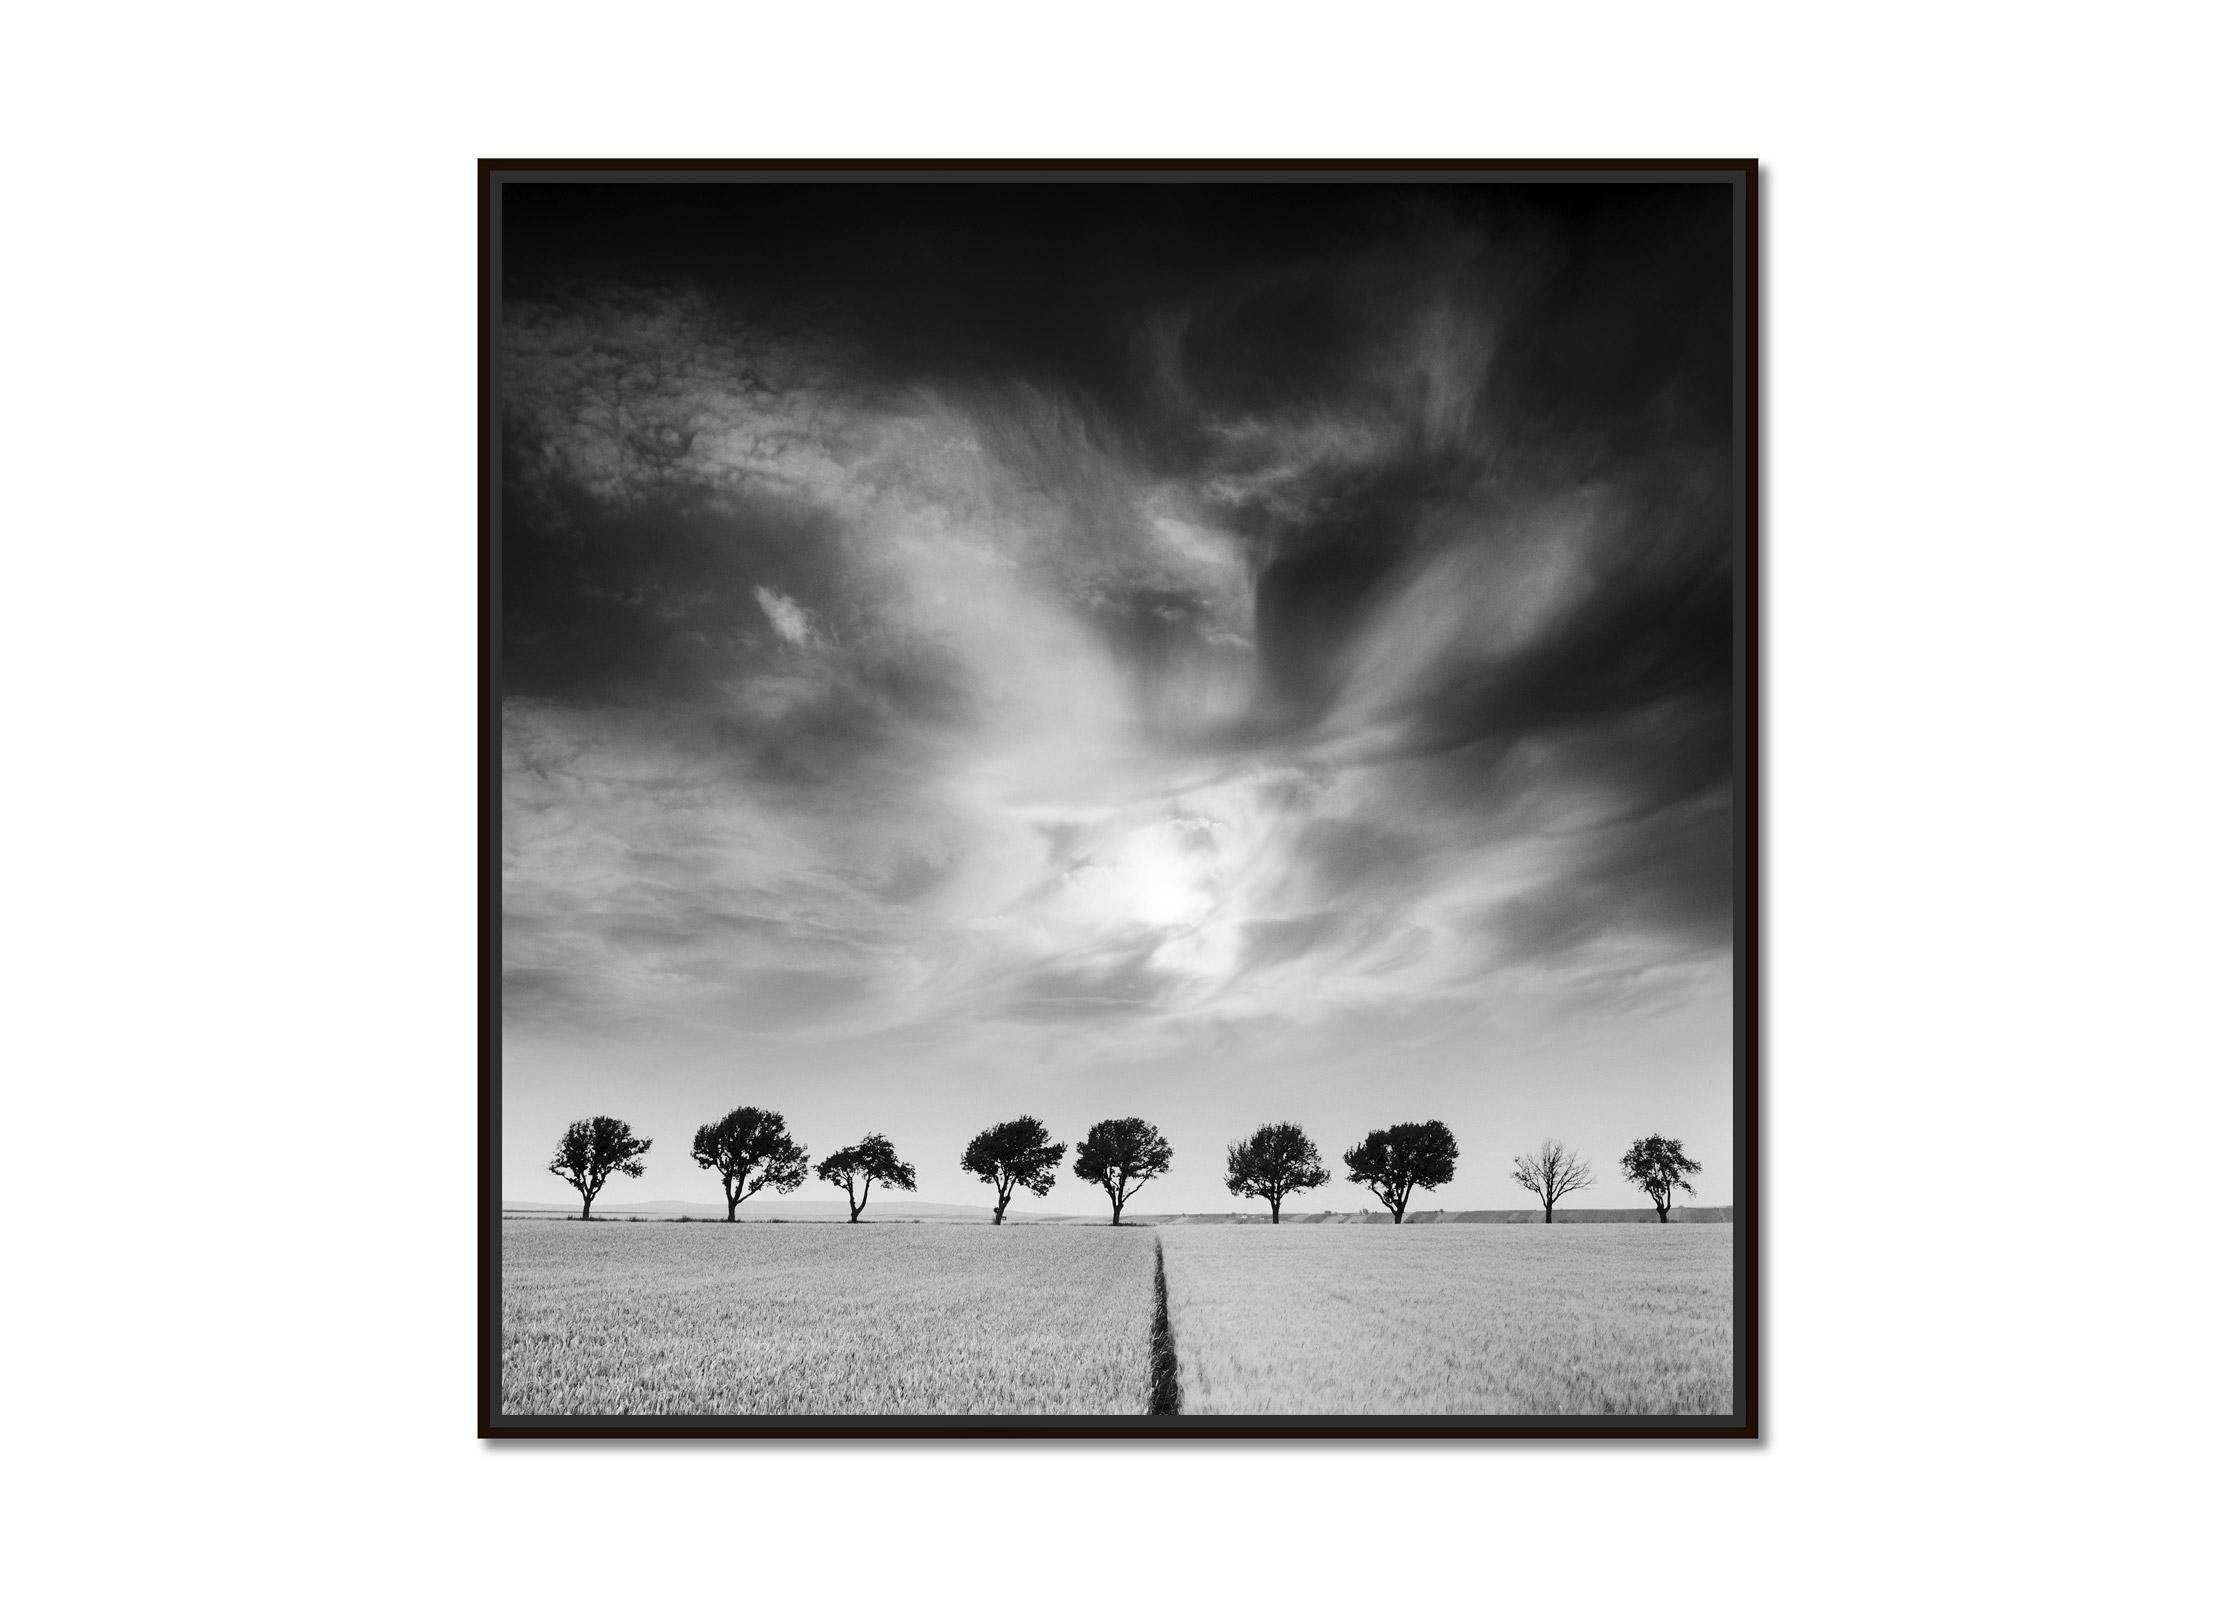 Cerisiers et ciel sombre, Autriche, noir et blanc, photographie d'art, paysage - Photograph de Gerald Berghammer